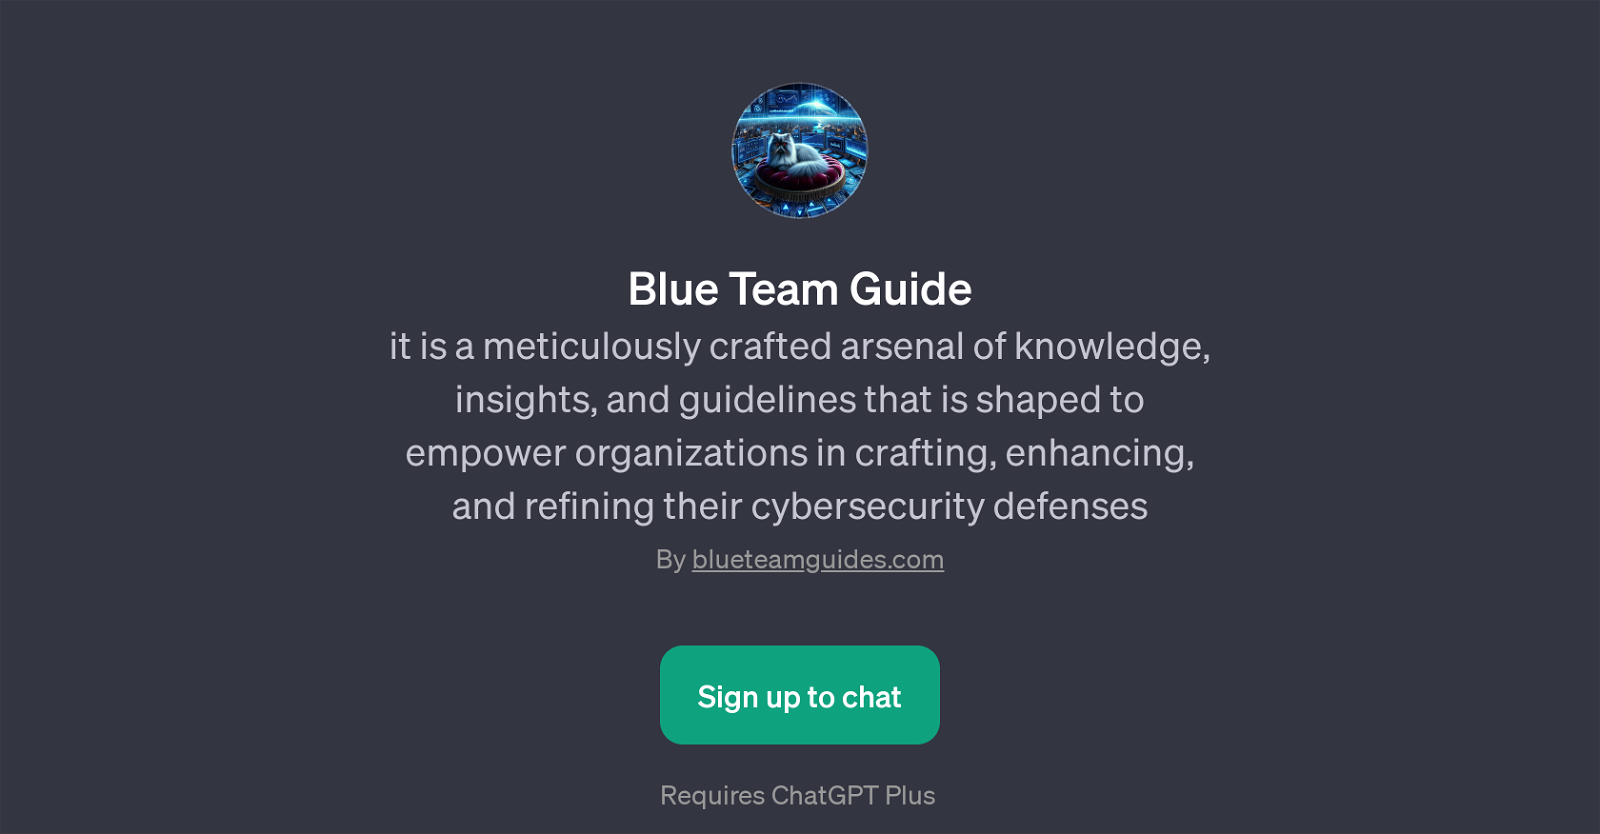 Blue Team Guide website